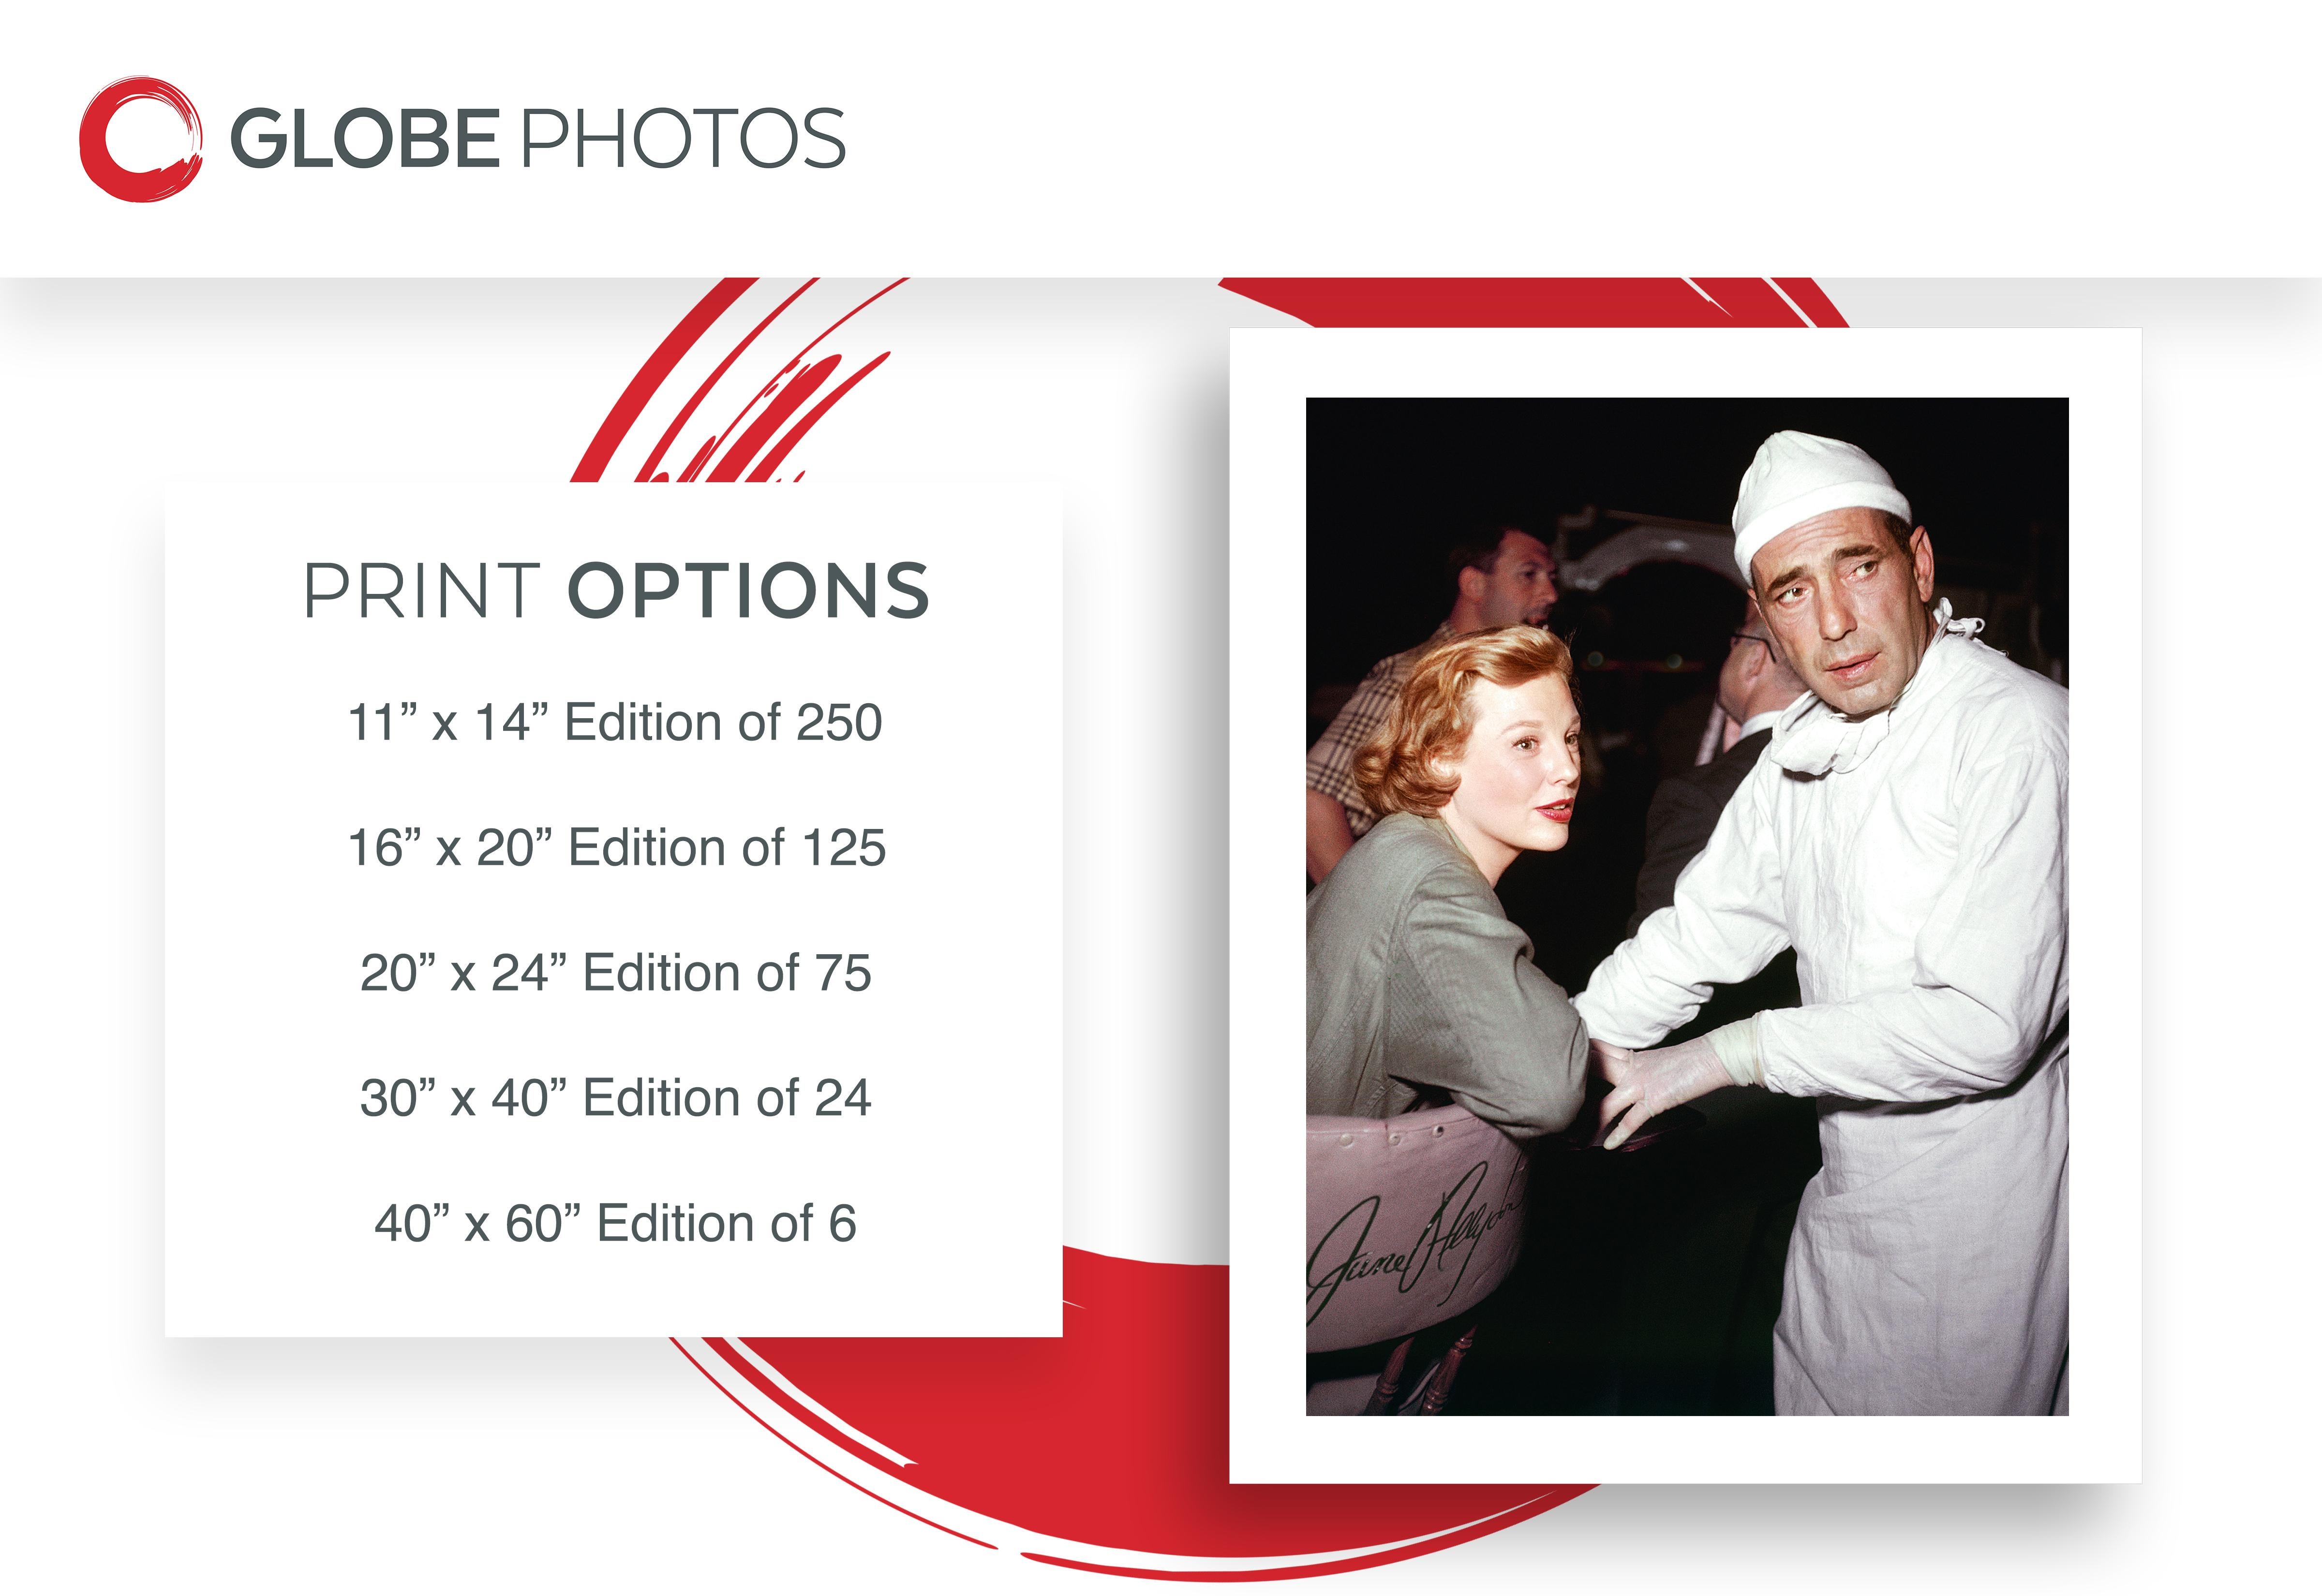 Humphrey Bogart y June Allyson en el plató - Photograph de Frank Worth